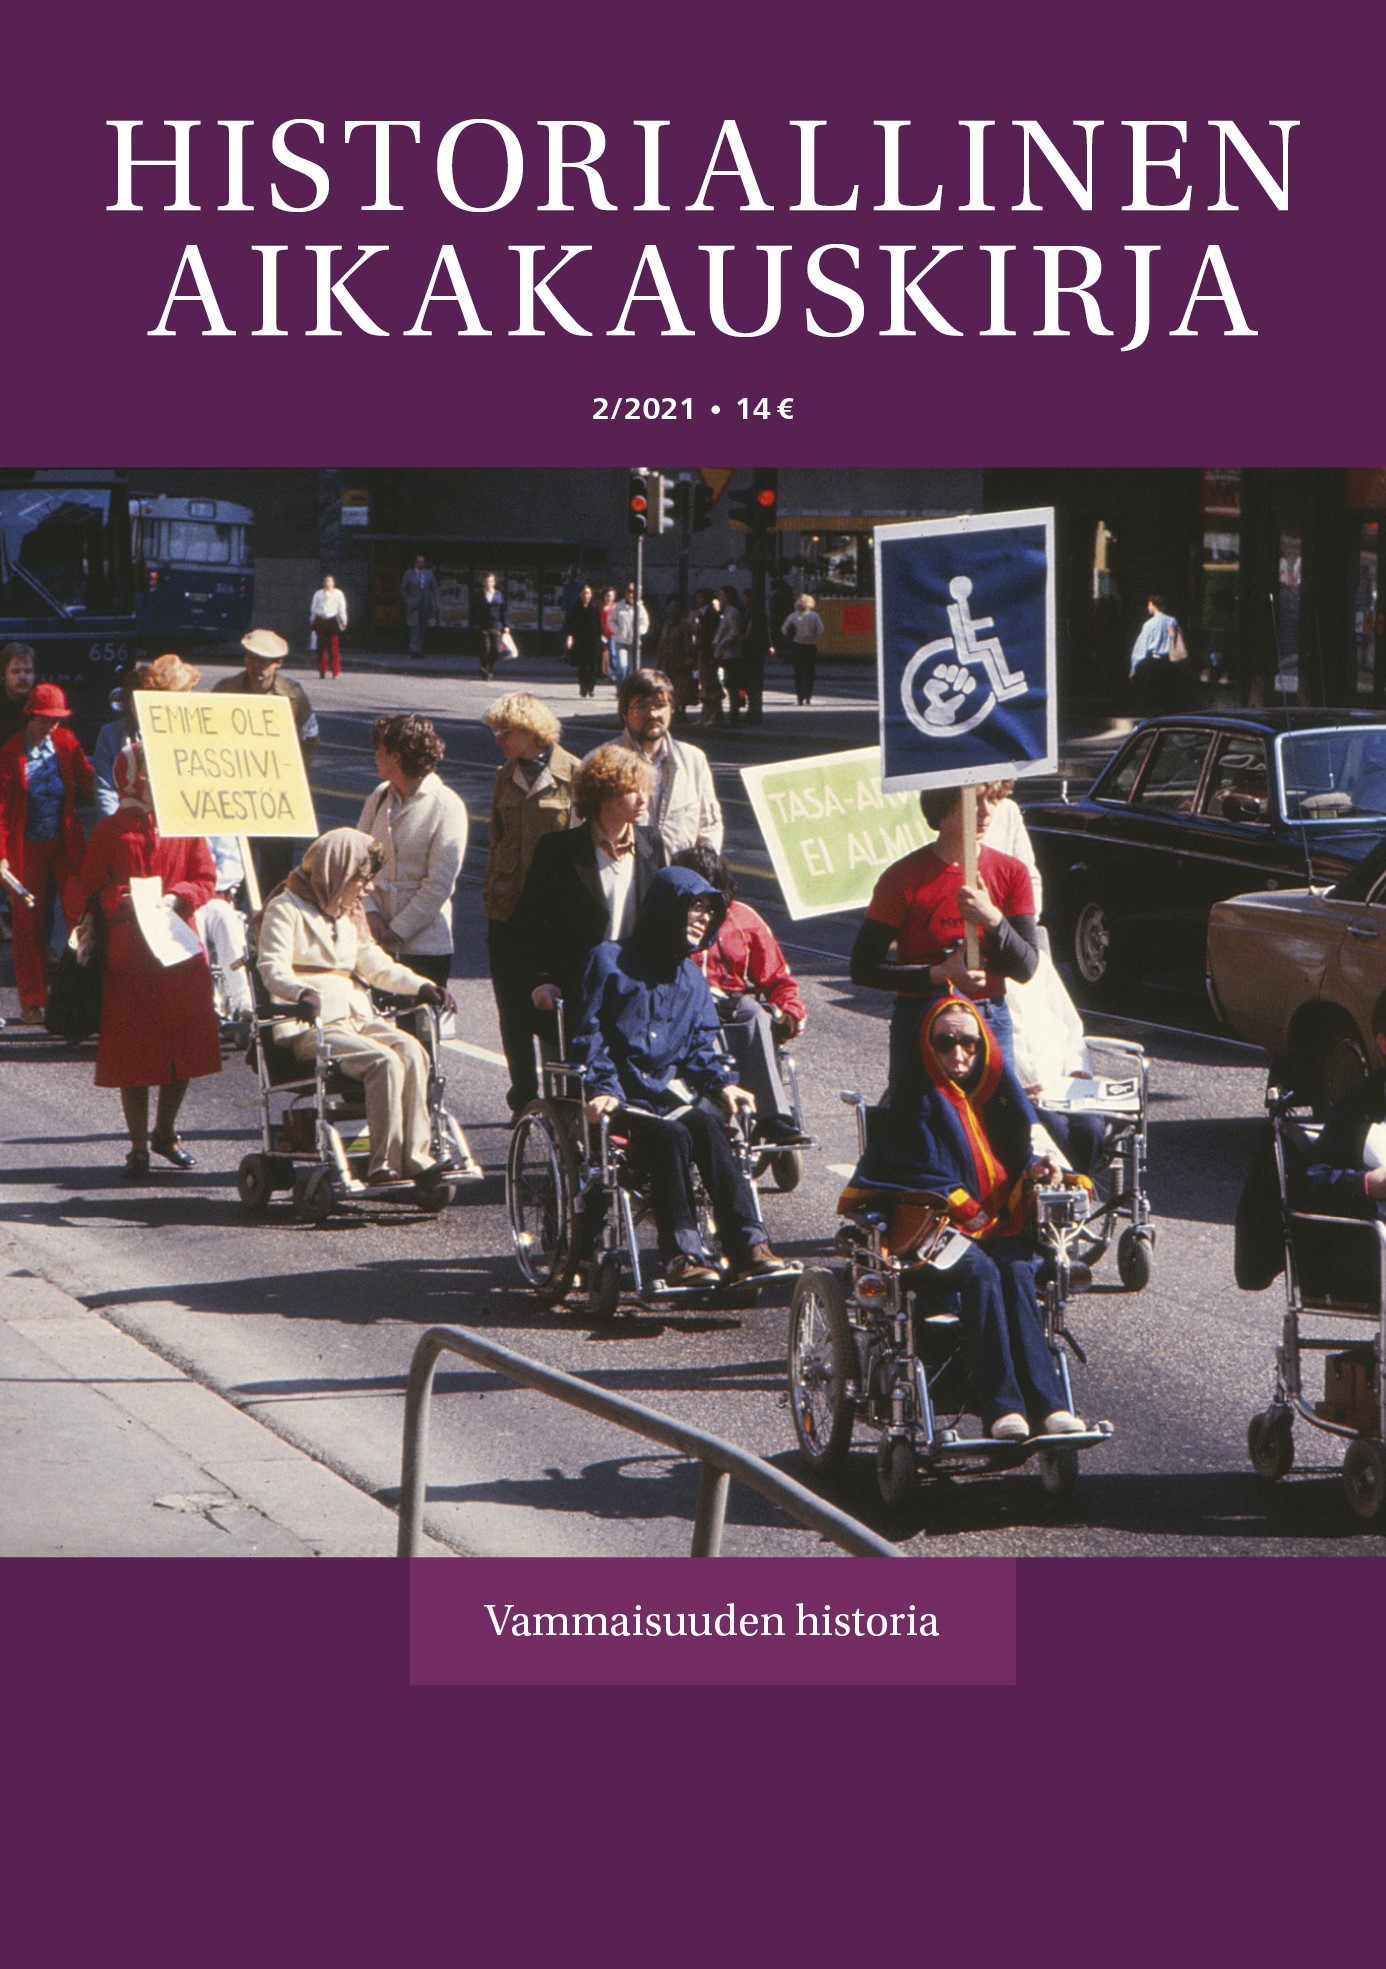 					Visa Vol 119 Nr 2 (2021): Historiallinen Aikakauskirja 2/2021 Vammaisuuden historia
				